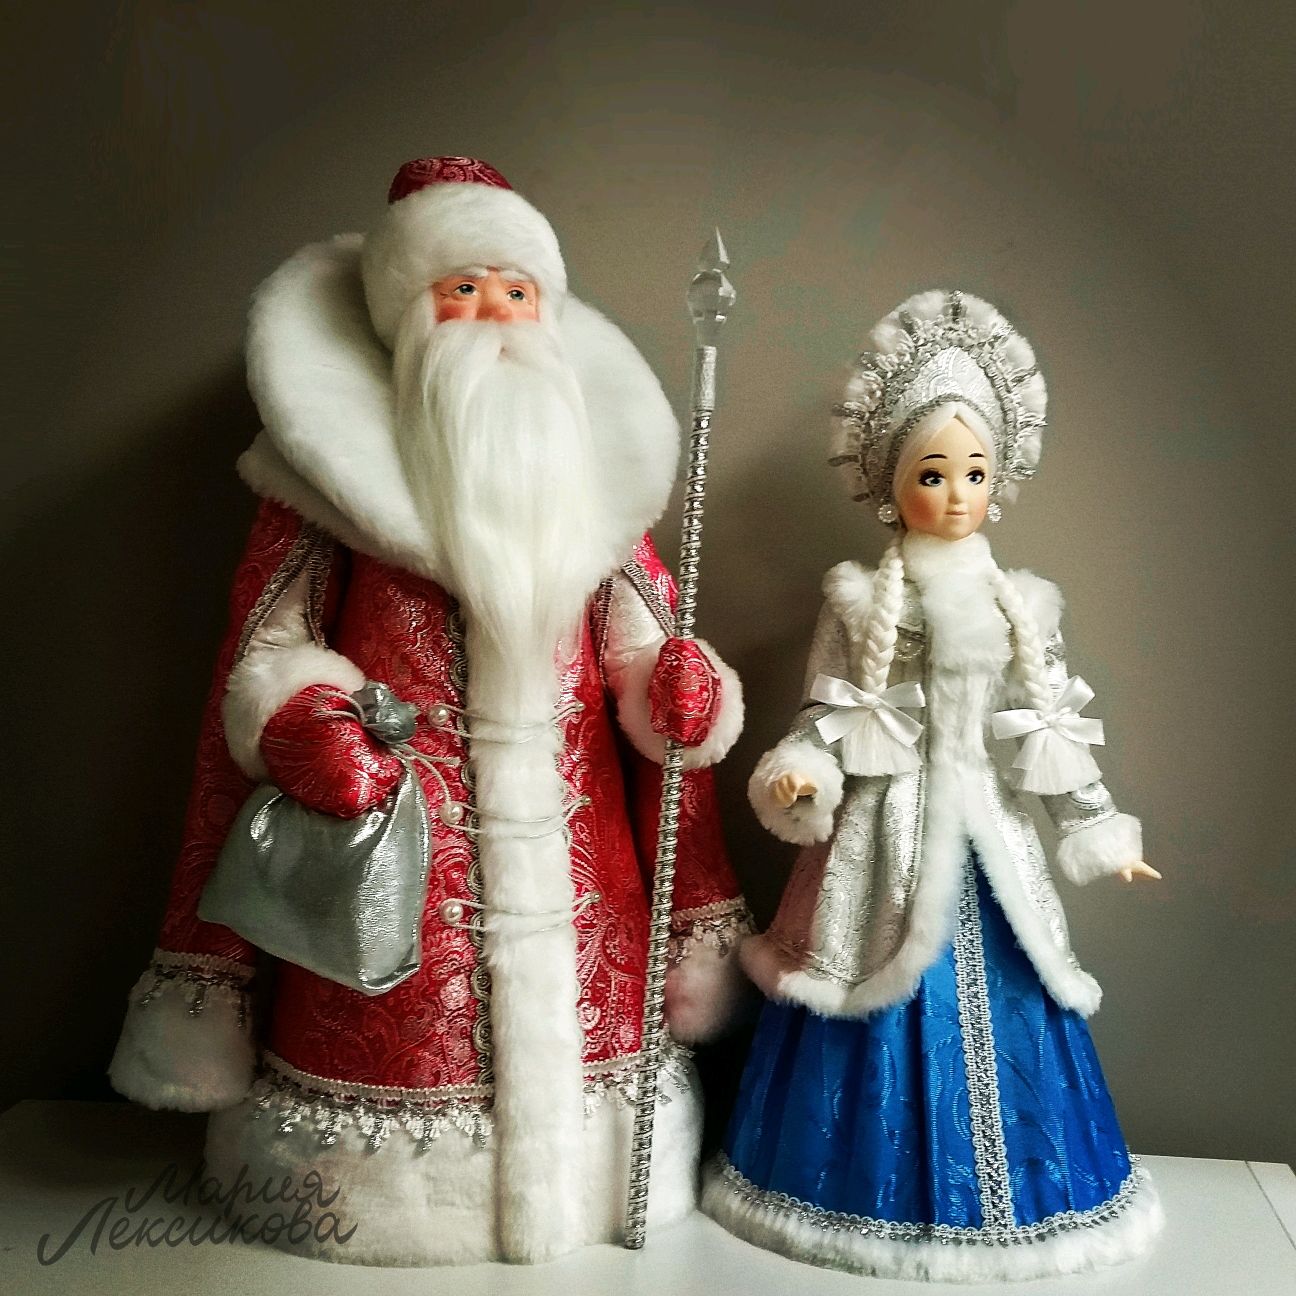 Уникальная новогодняя фигура Деда Мороза, способная оживить любой уголок и превратить его в настоящую сказку